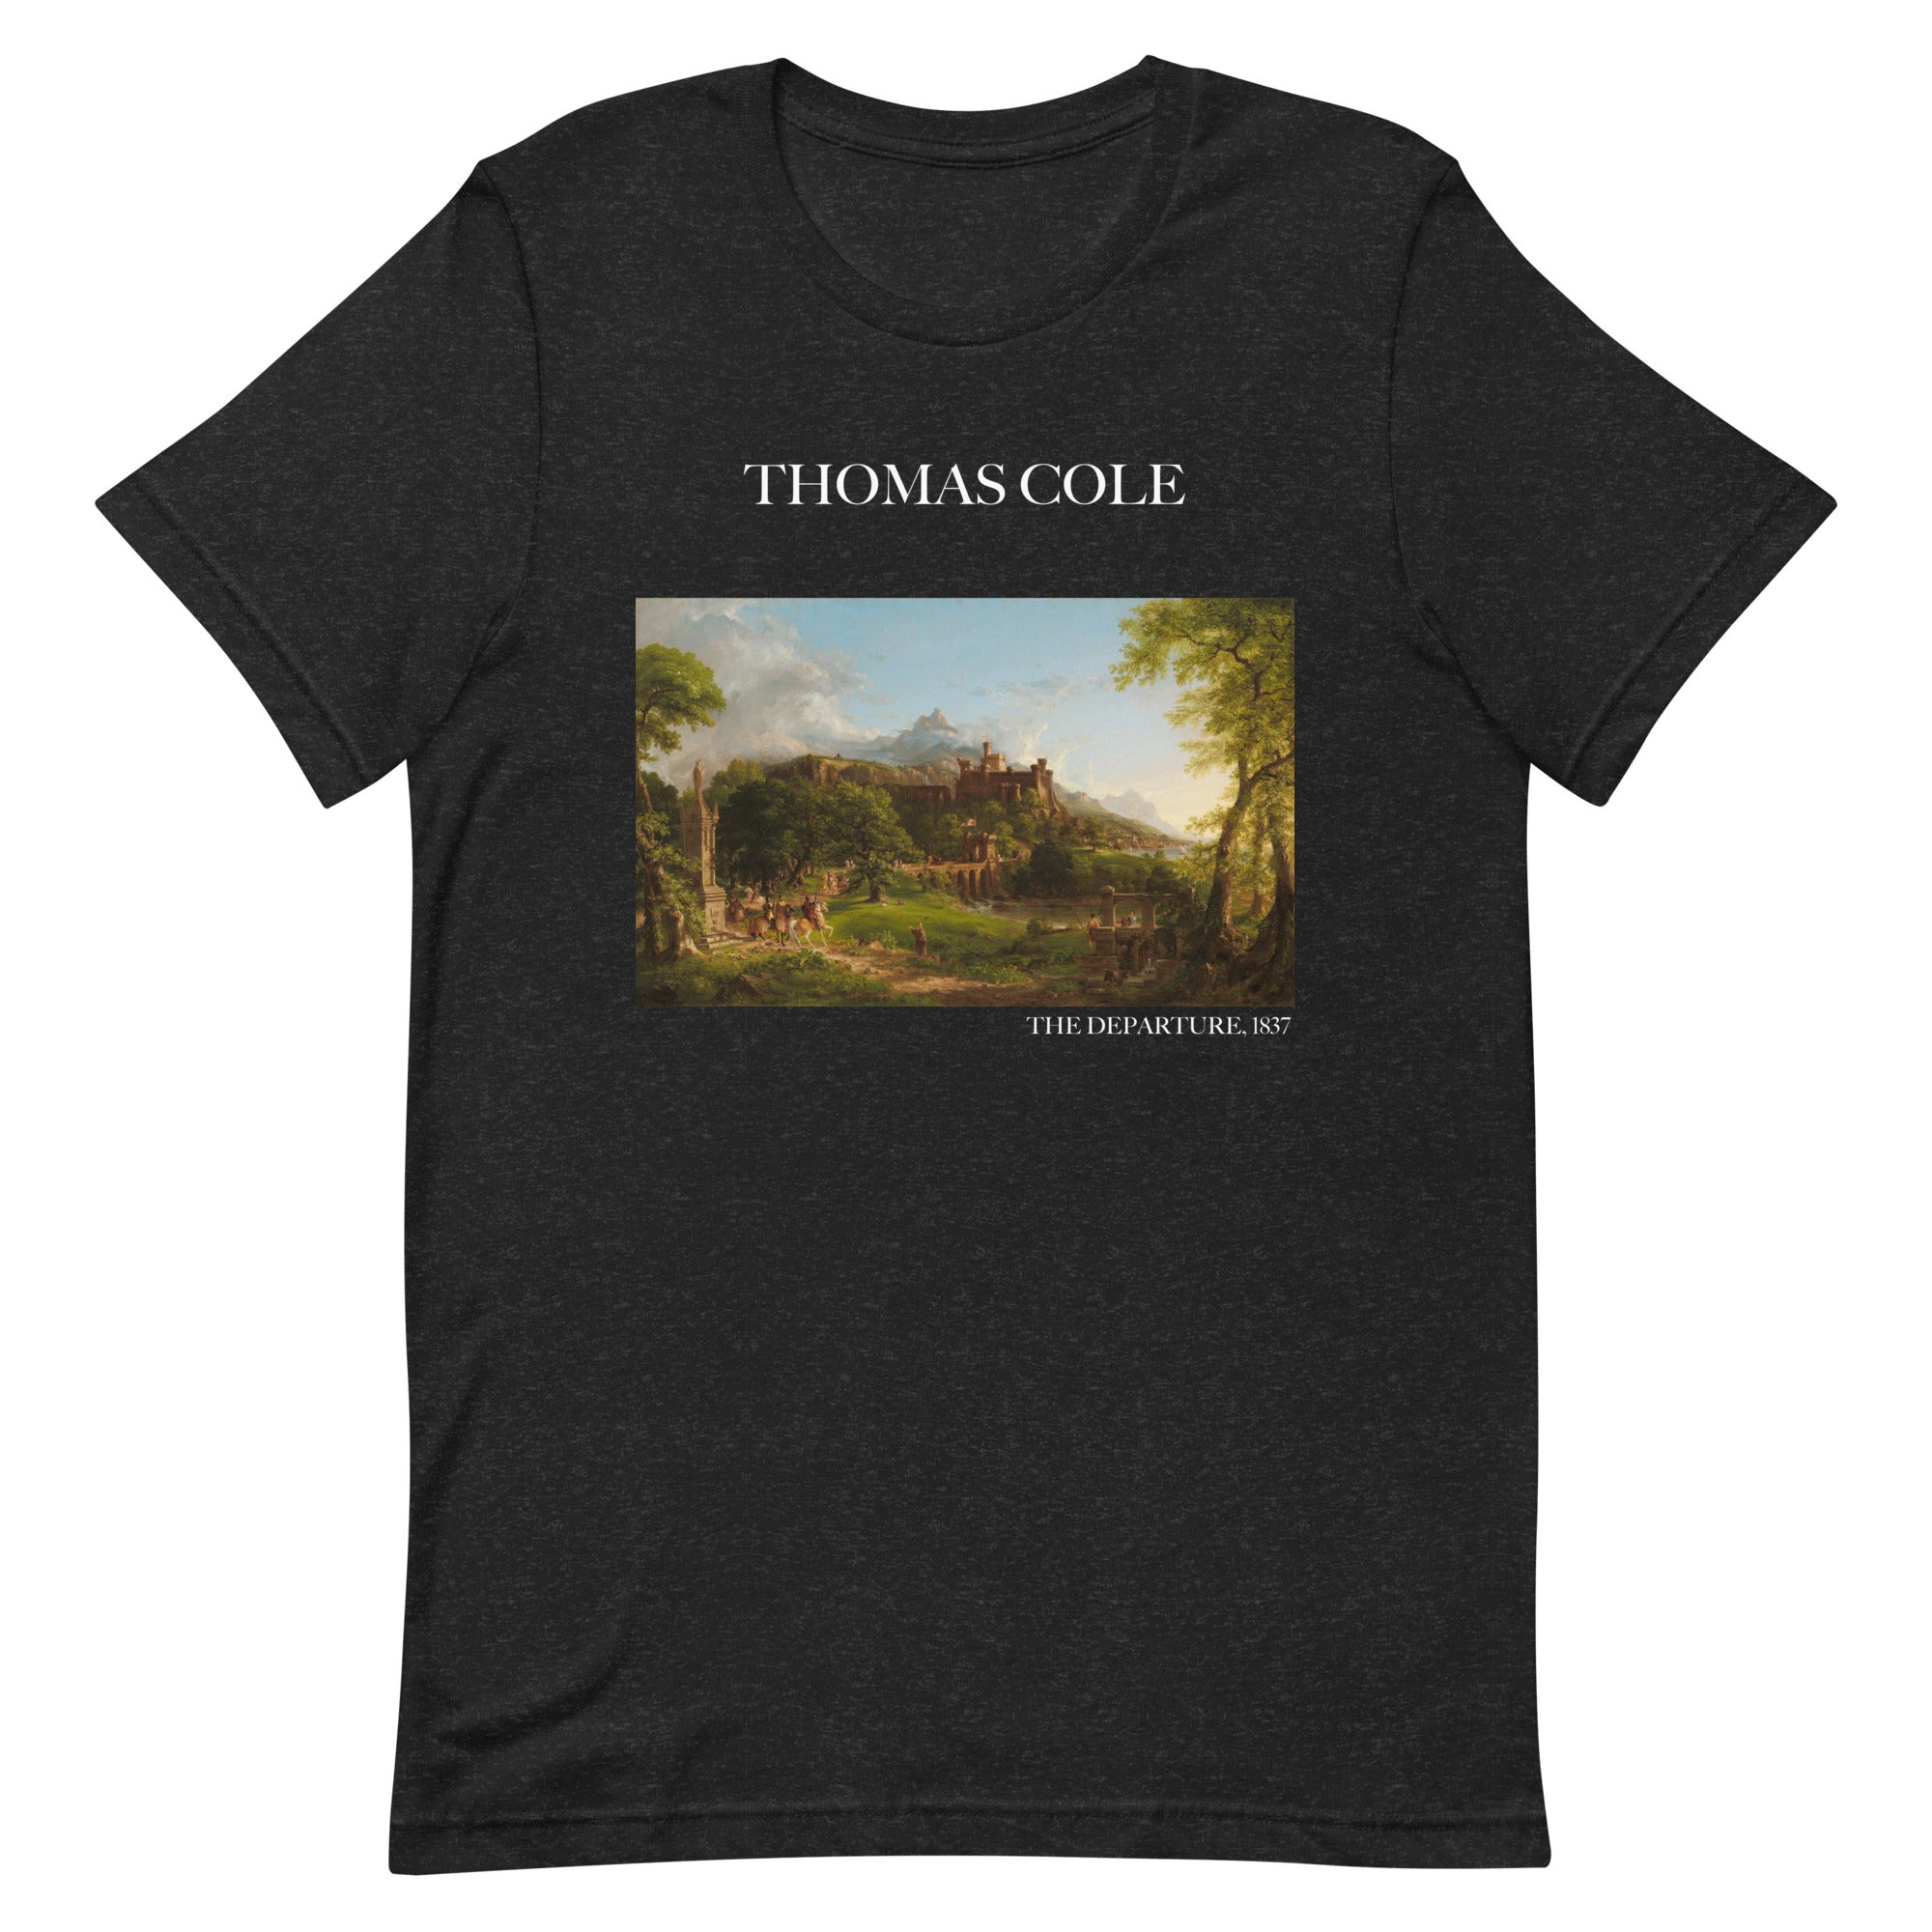 Thomas Cole T-Shirt mit berühmtem Gemälde „The Departure“ | Unisex-T-Shirt im klassischen Kunst-Stil